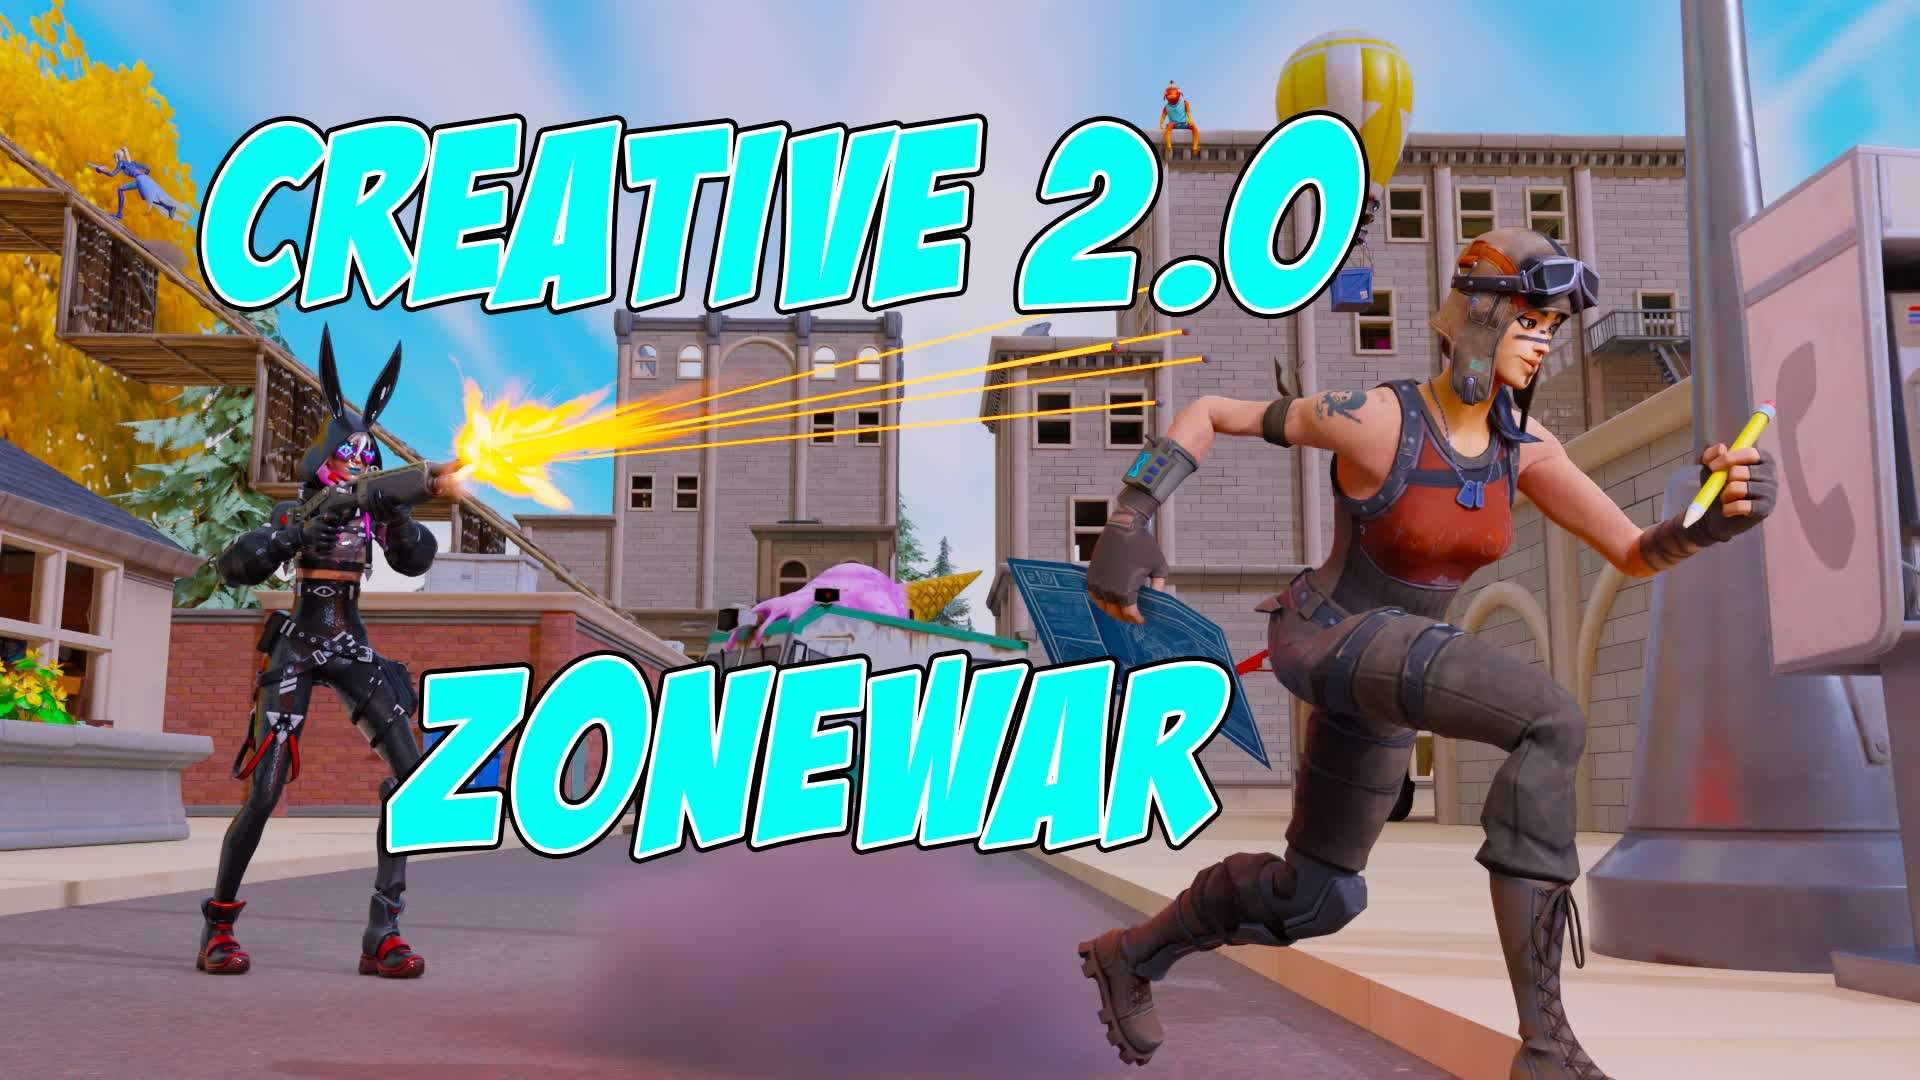 CREATIVE 2.0 ZONEWAR & BOXFIGHT